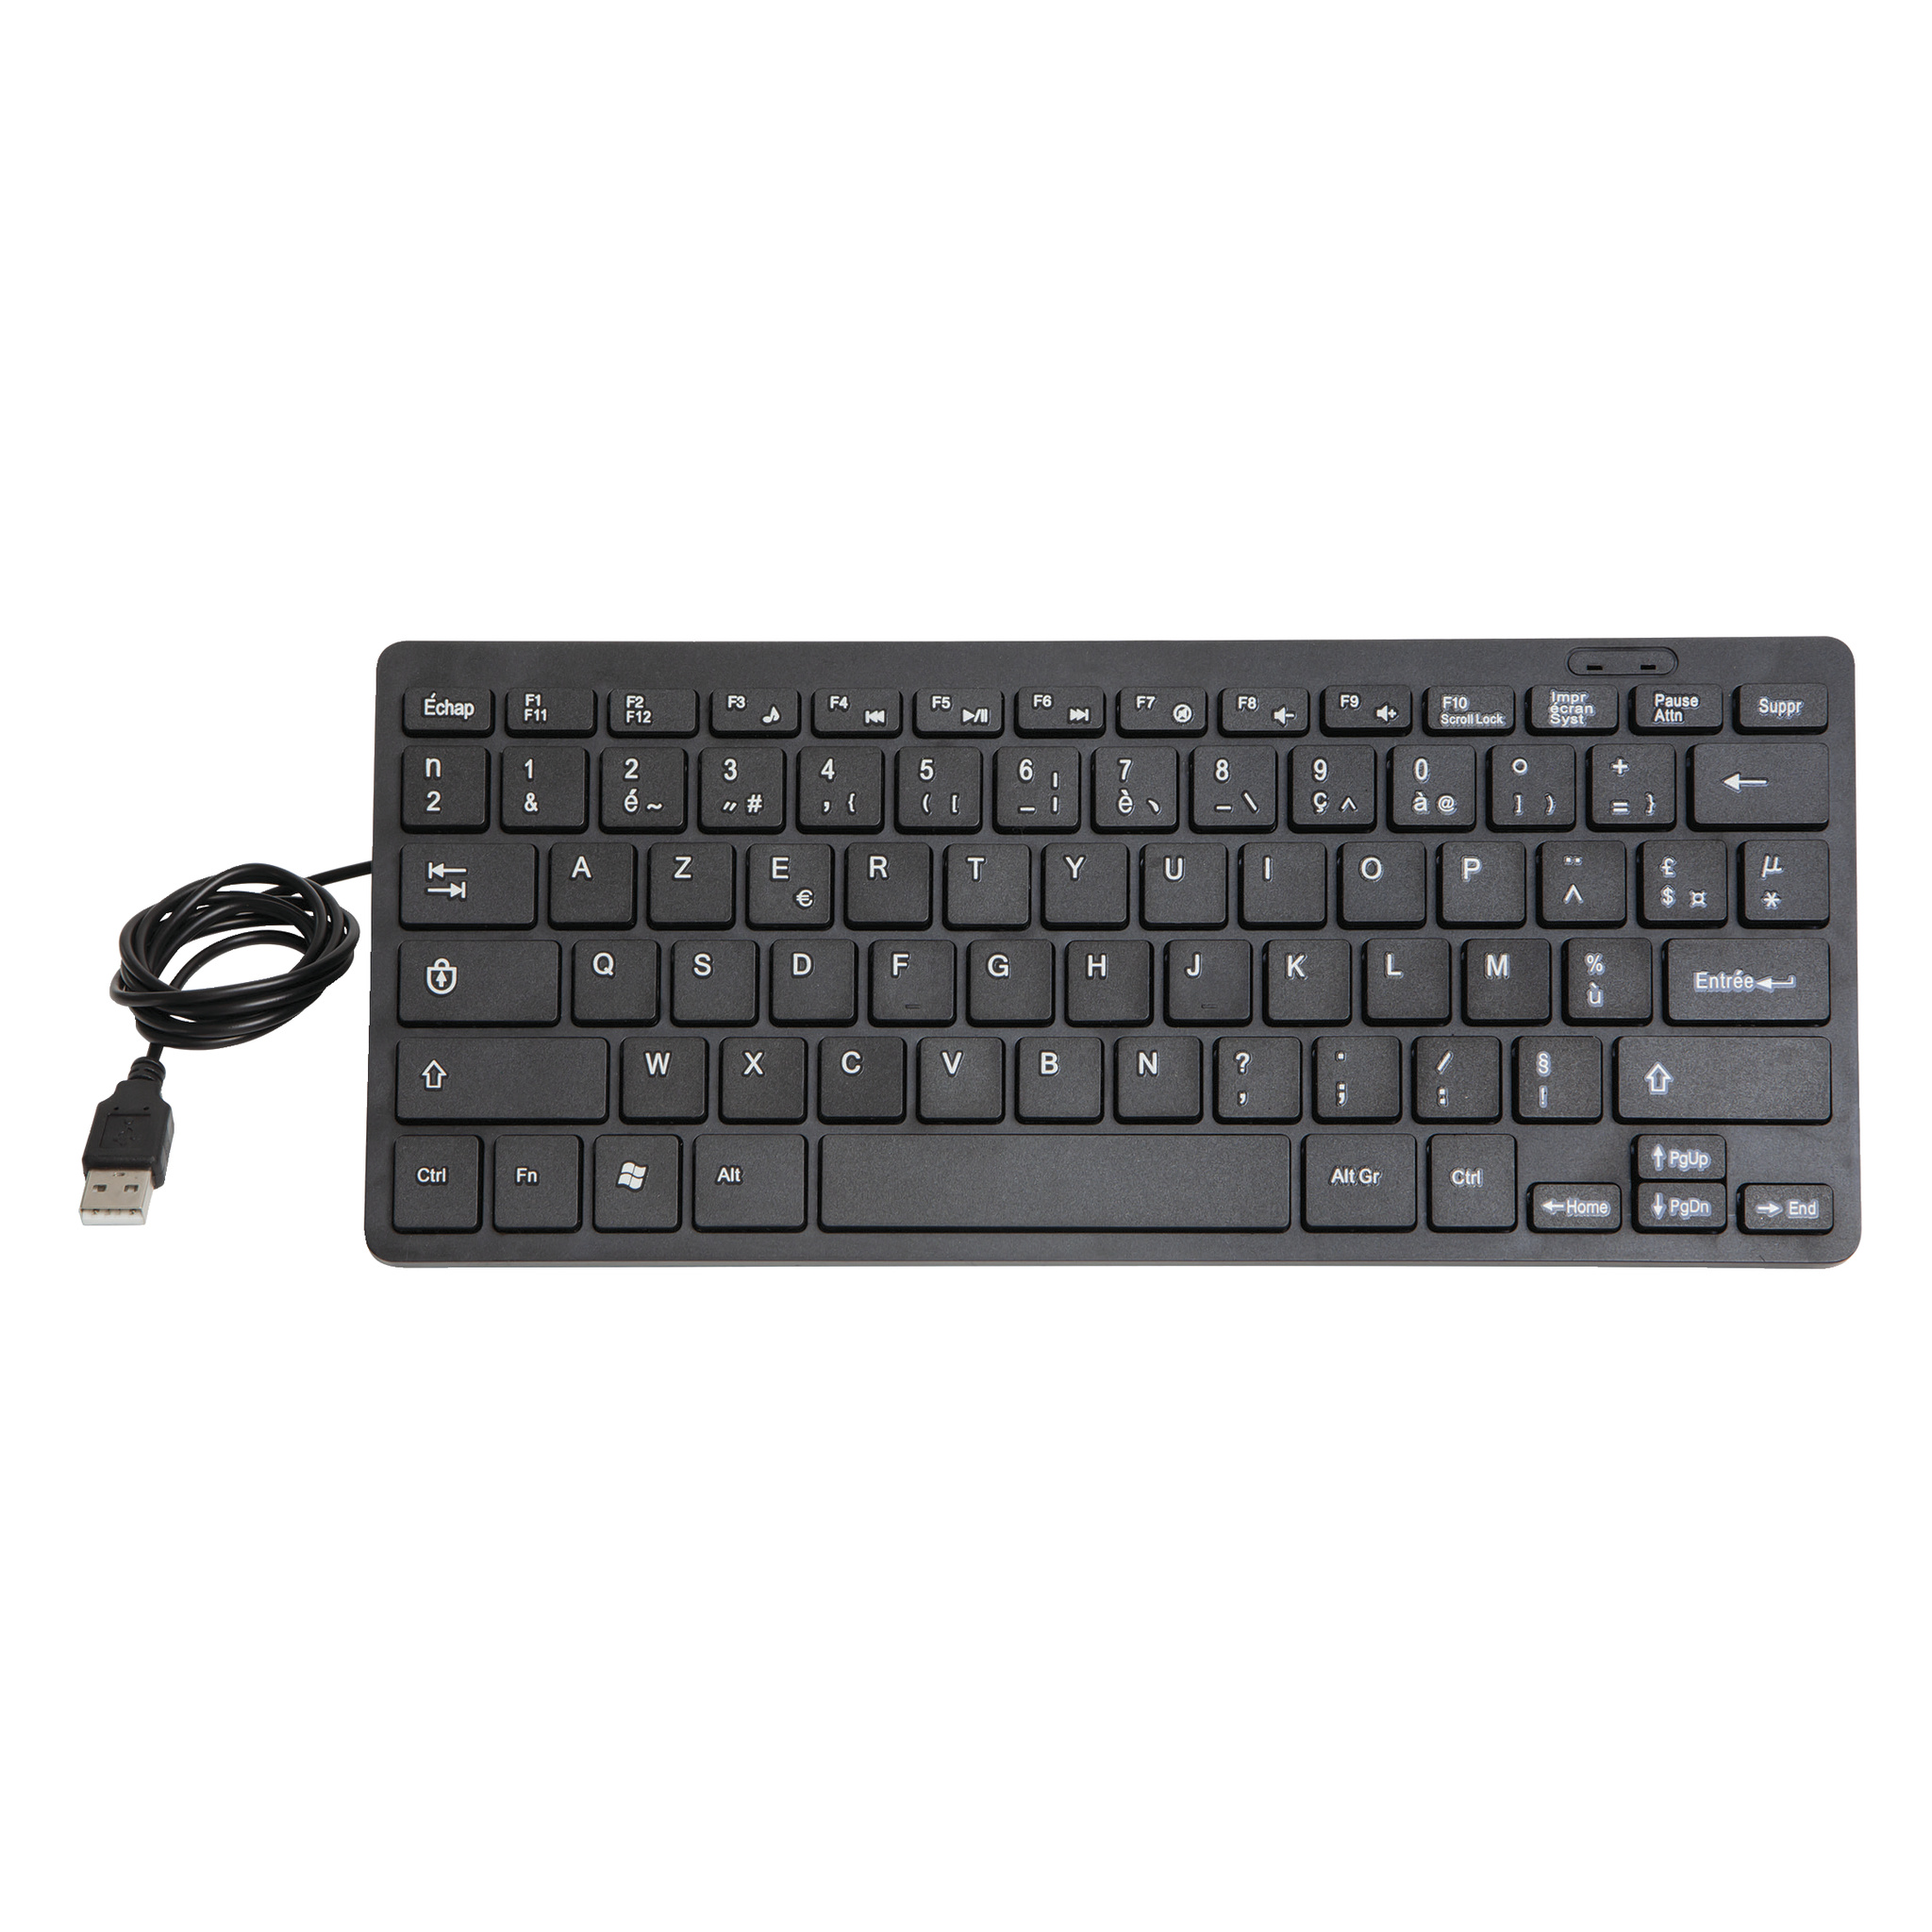 Productiviteit doe niet Bevriezen Frans toetsenbord: keyboard AZERTY met USB voor in pc/laptop | robuust -  Acculaders.nl